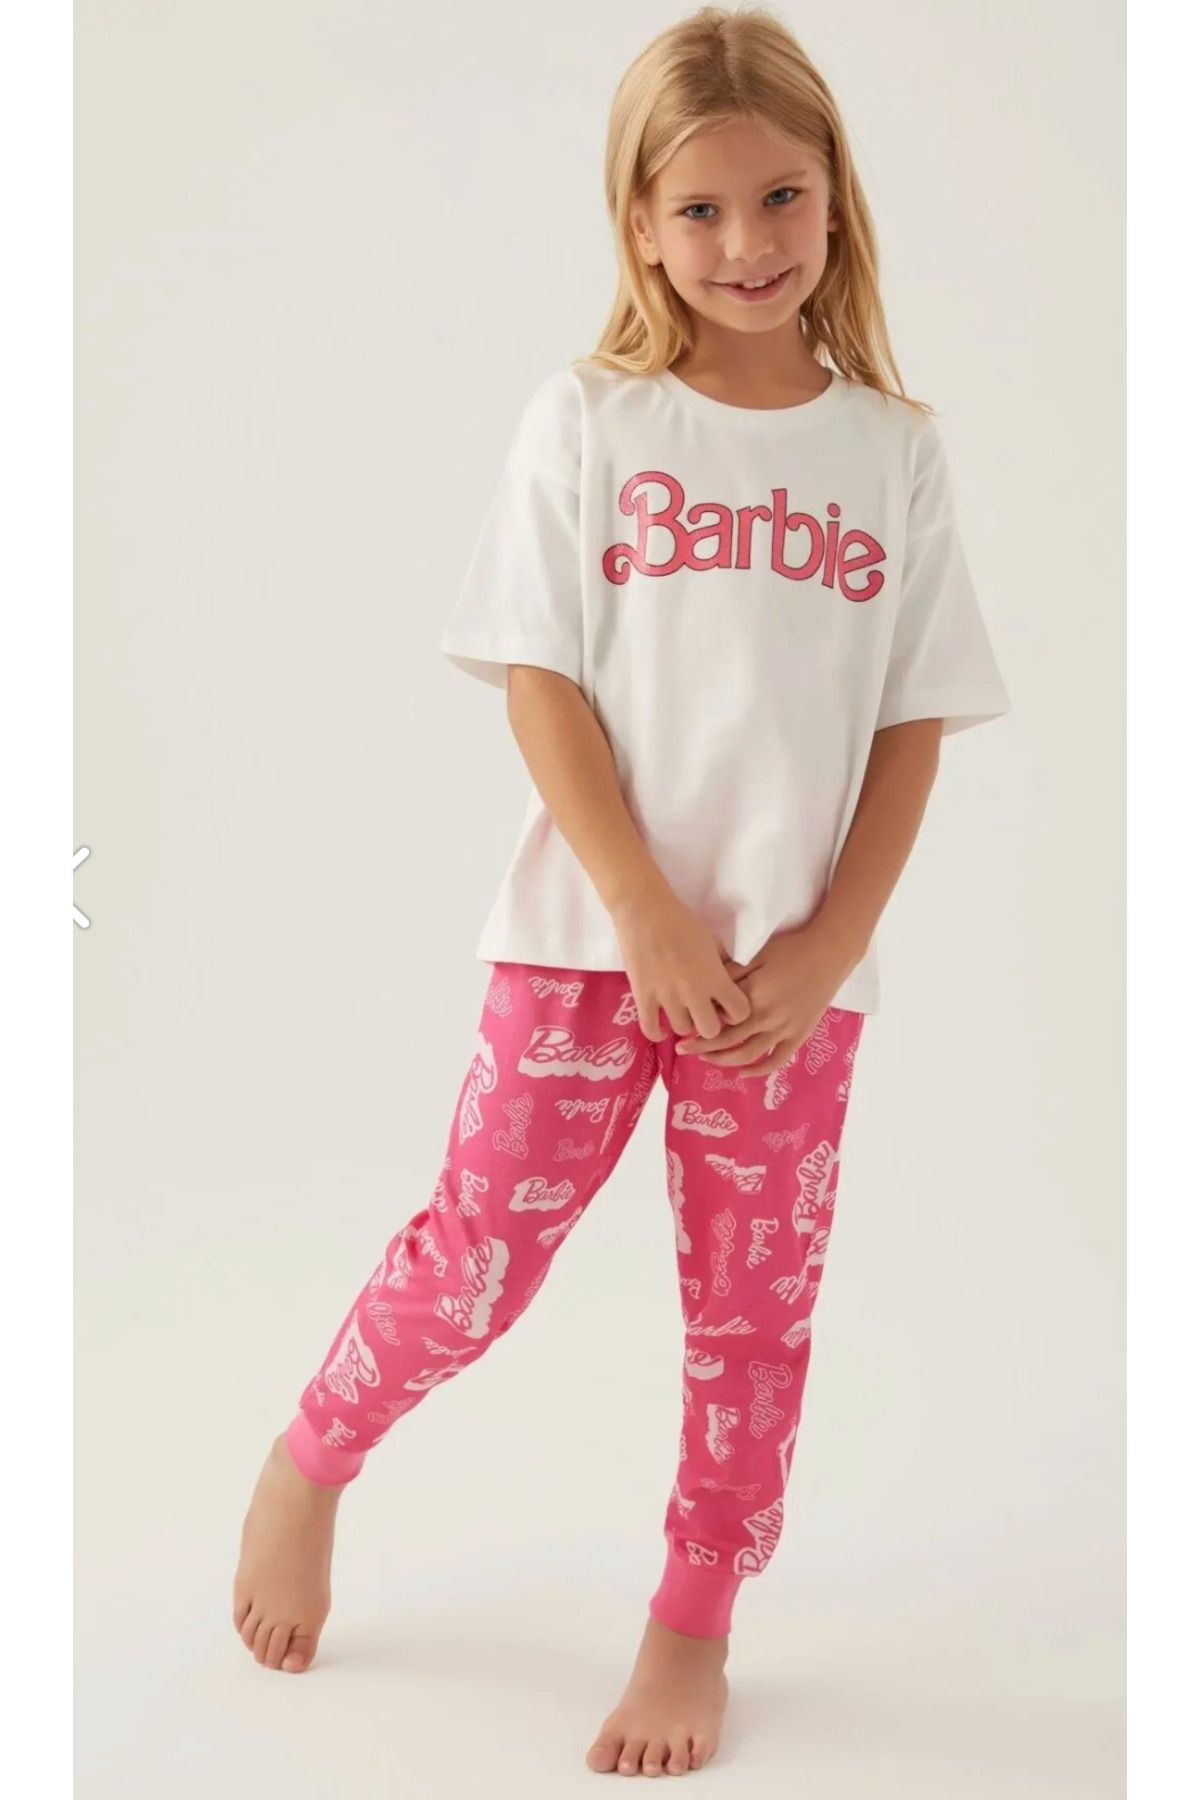 Barbie Kız Çocuk, Lisanslı, Barbie, Kısa Kollu T-shirt Pijama Takımı